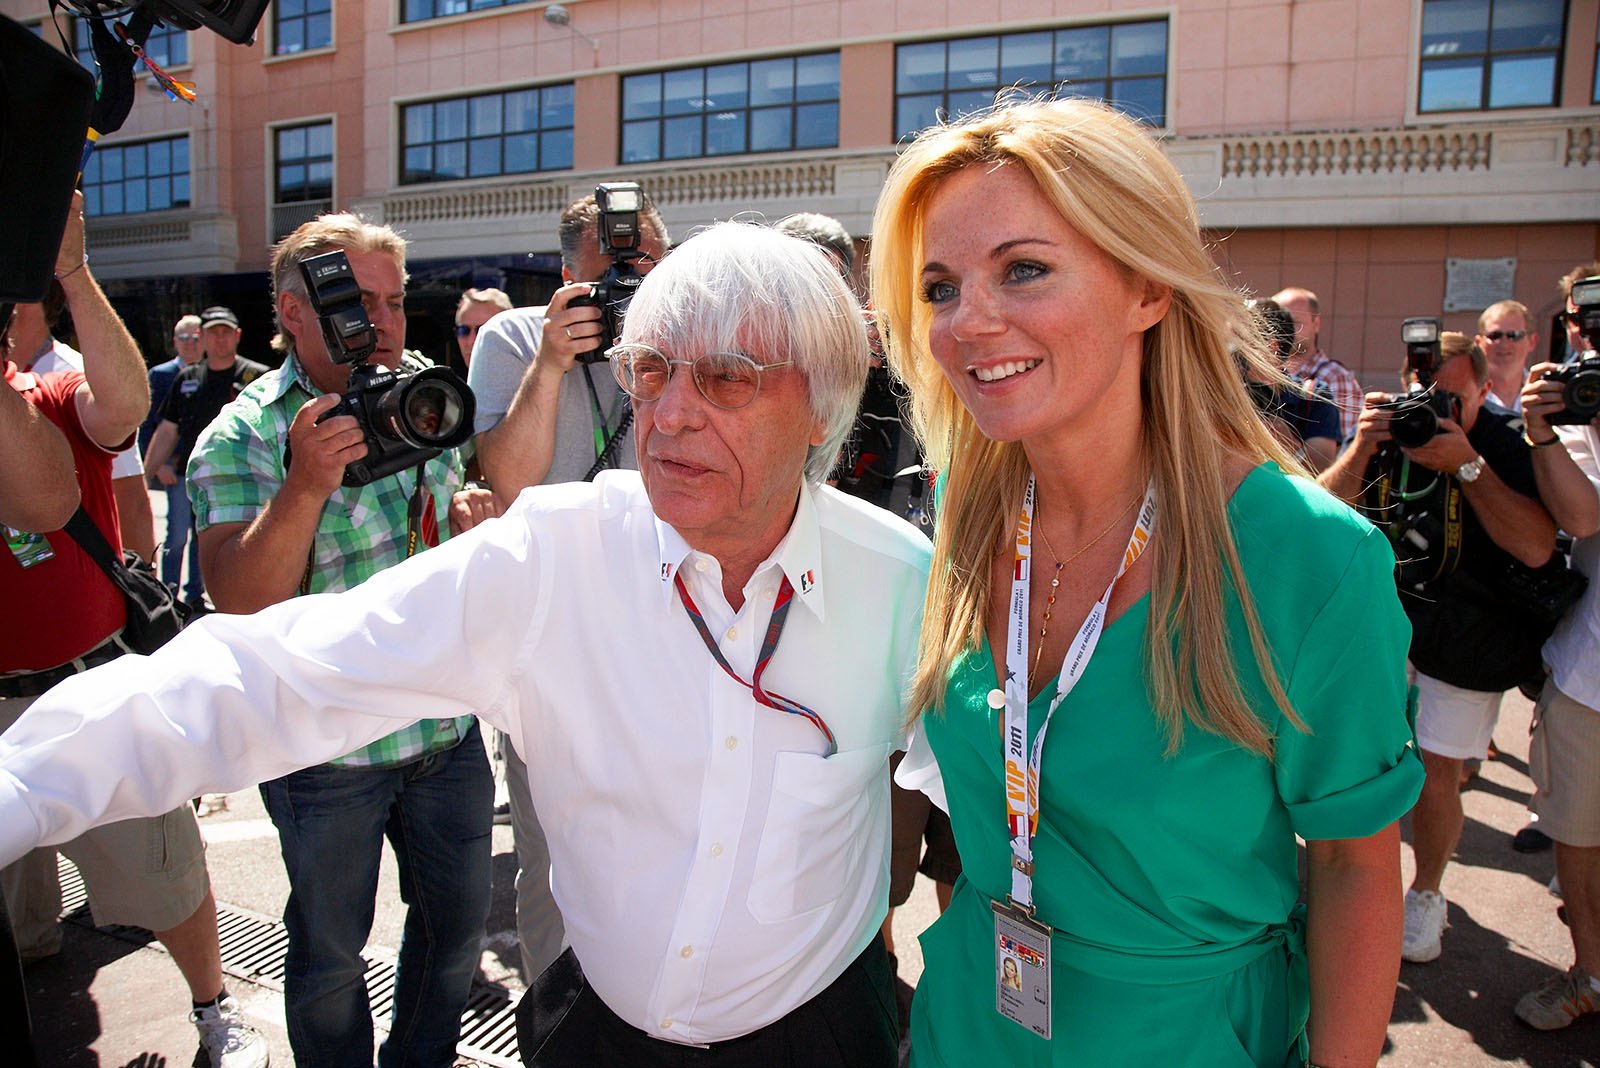 Bernie Ecclestone with a girl, Monaco, Monte Carlo, June 2011.